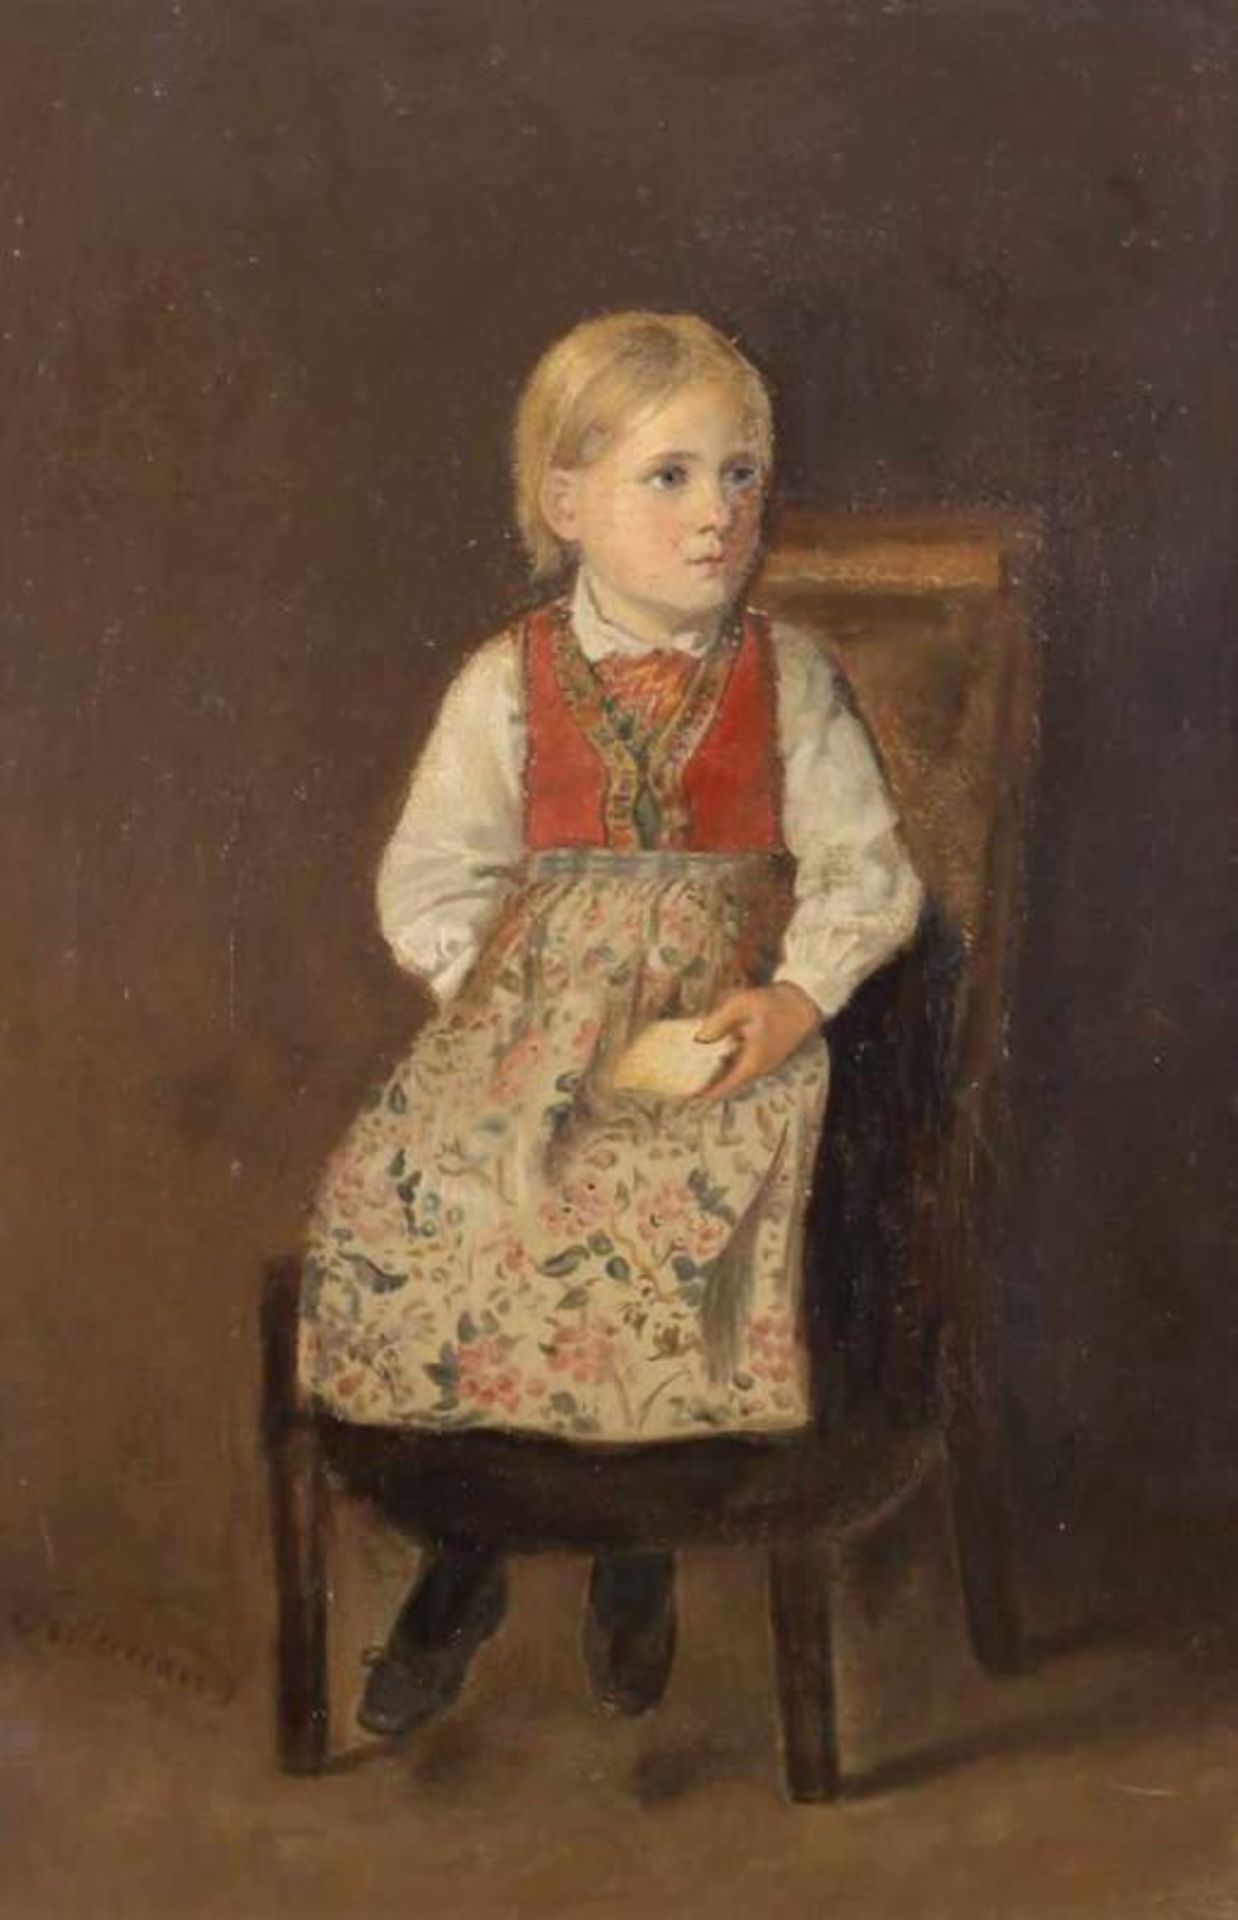 Tidemand (19. Jh.), "Mädchen auf einem Stuhl sitzend", Ölstudie, Öl auf Leinwand, bezeichnet unten